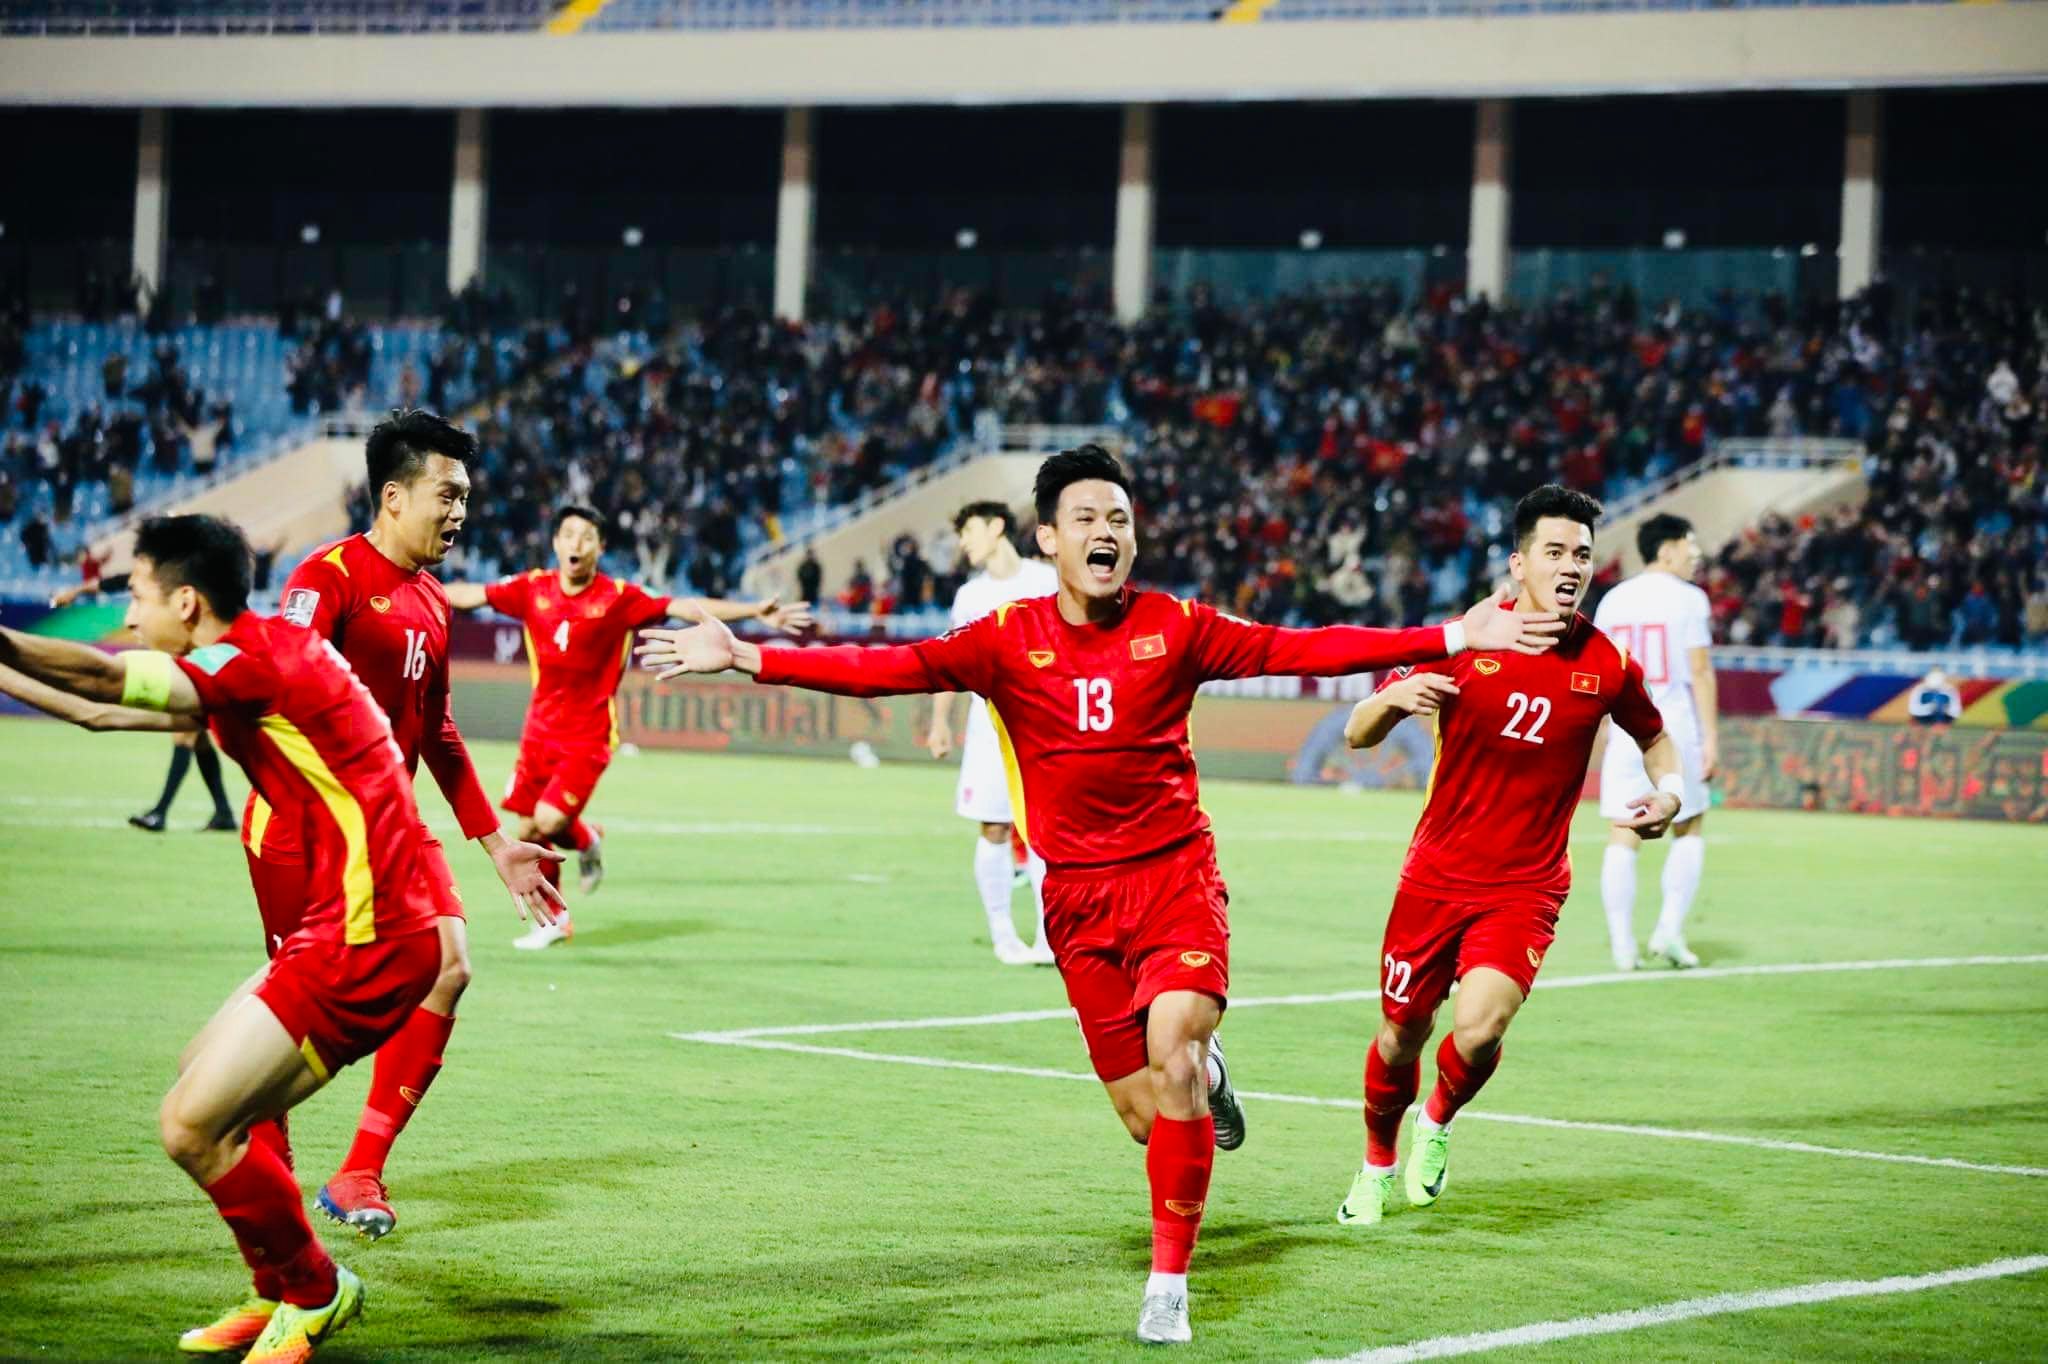 Mùng 1 Tết ngọt ngào của CĐV bóng đá Việt, đội tuyển có chiến thắng lịch sử trước Trung Quốc tại vòng loại World Cup 2022